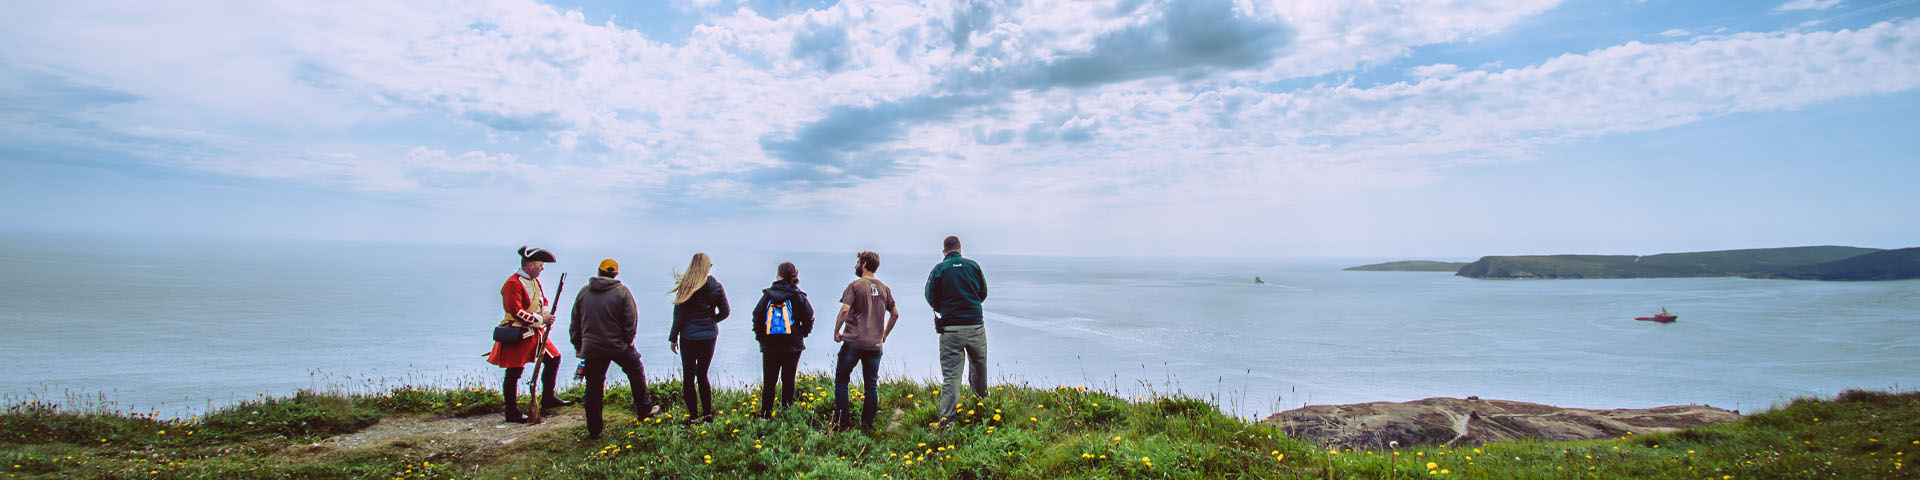 un groupe de 6 personnes se tenant sur un bord côtier, avec vue sur l'océan